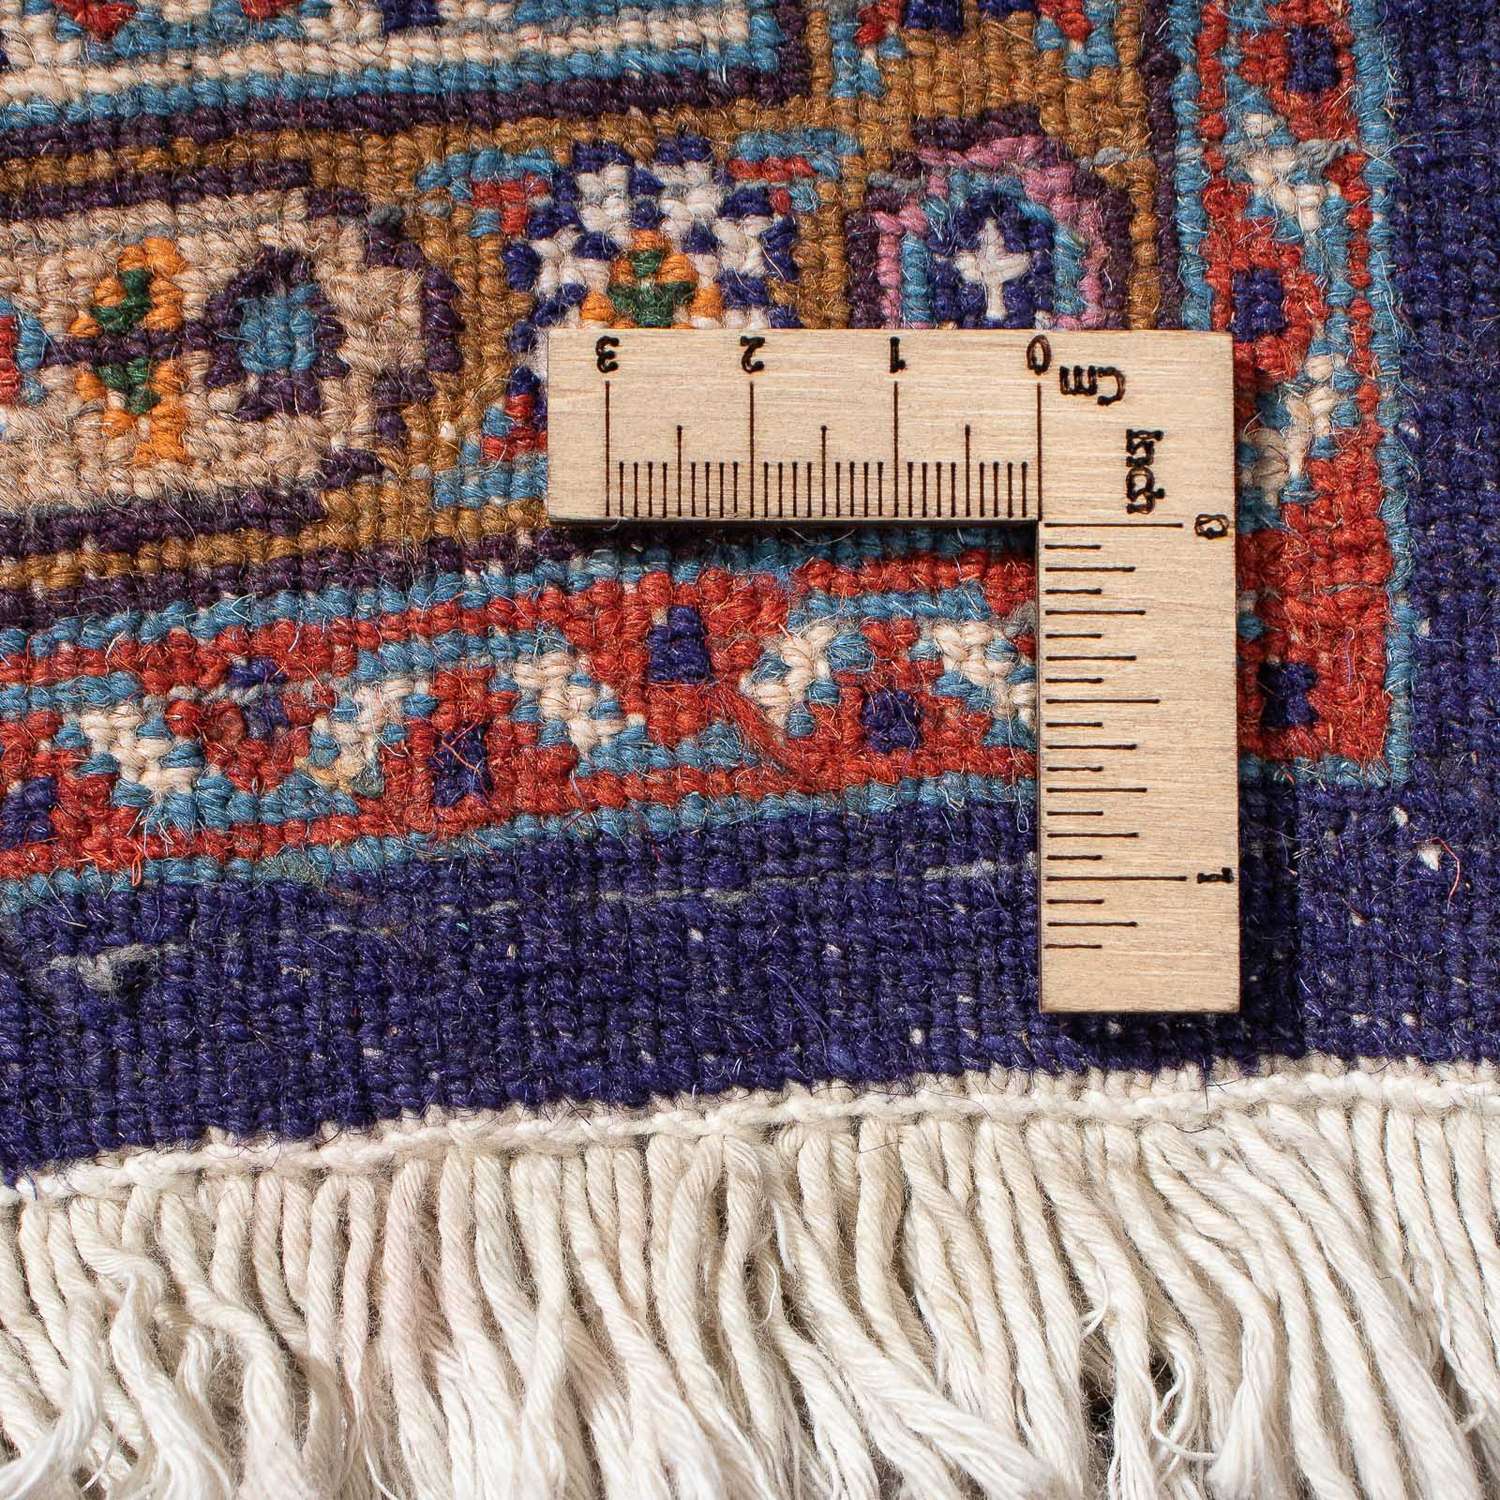 Tapis de couloir Tapis persan - Classique - 381 x 80 cm - multicolore